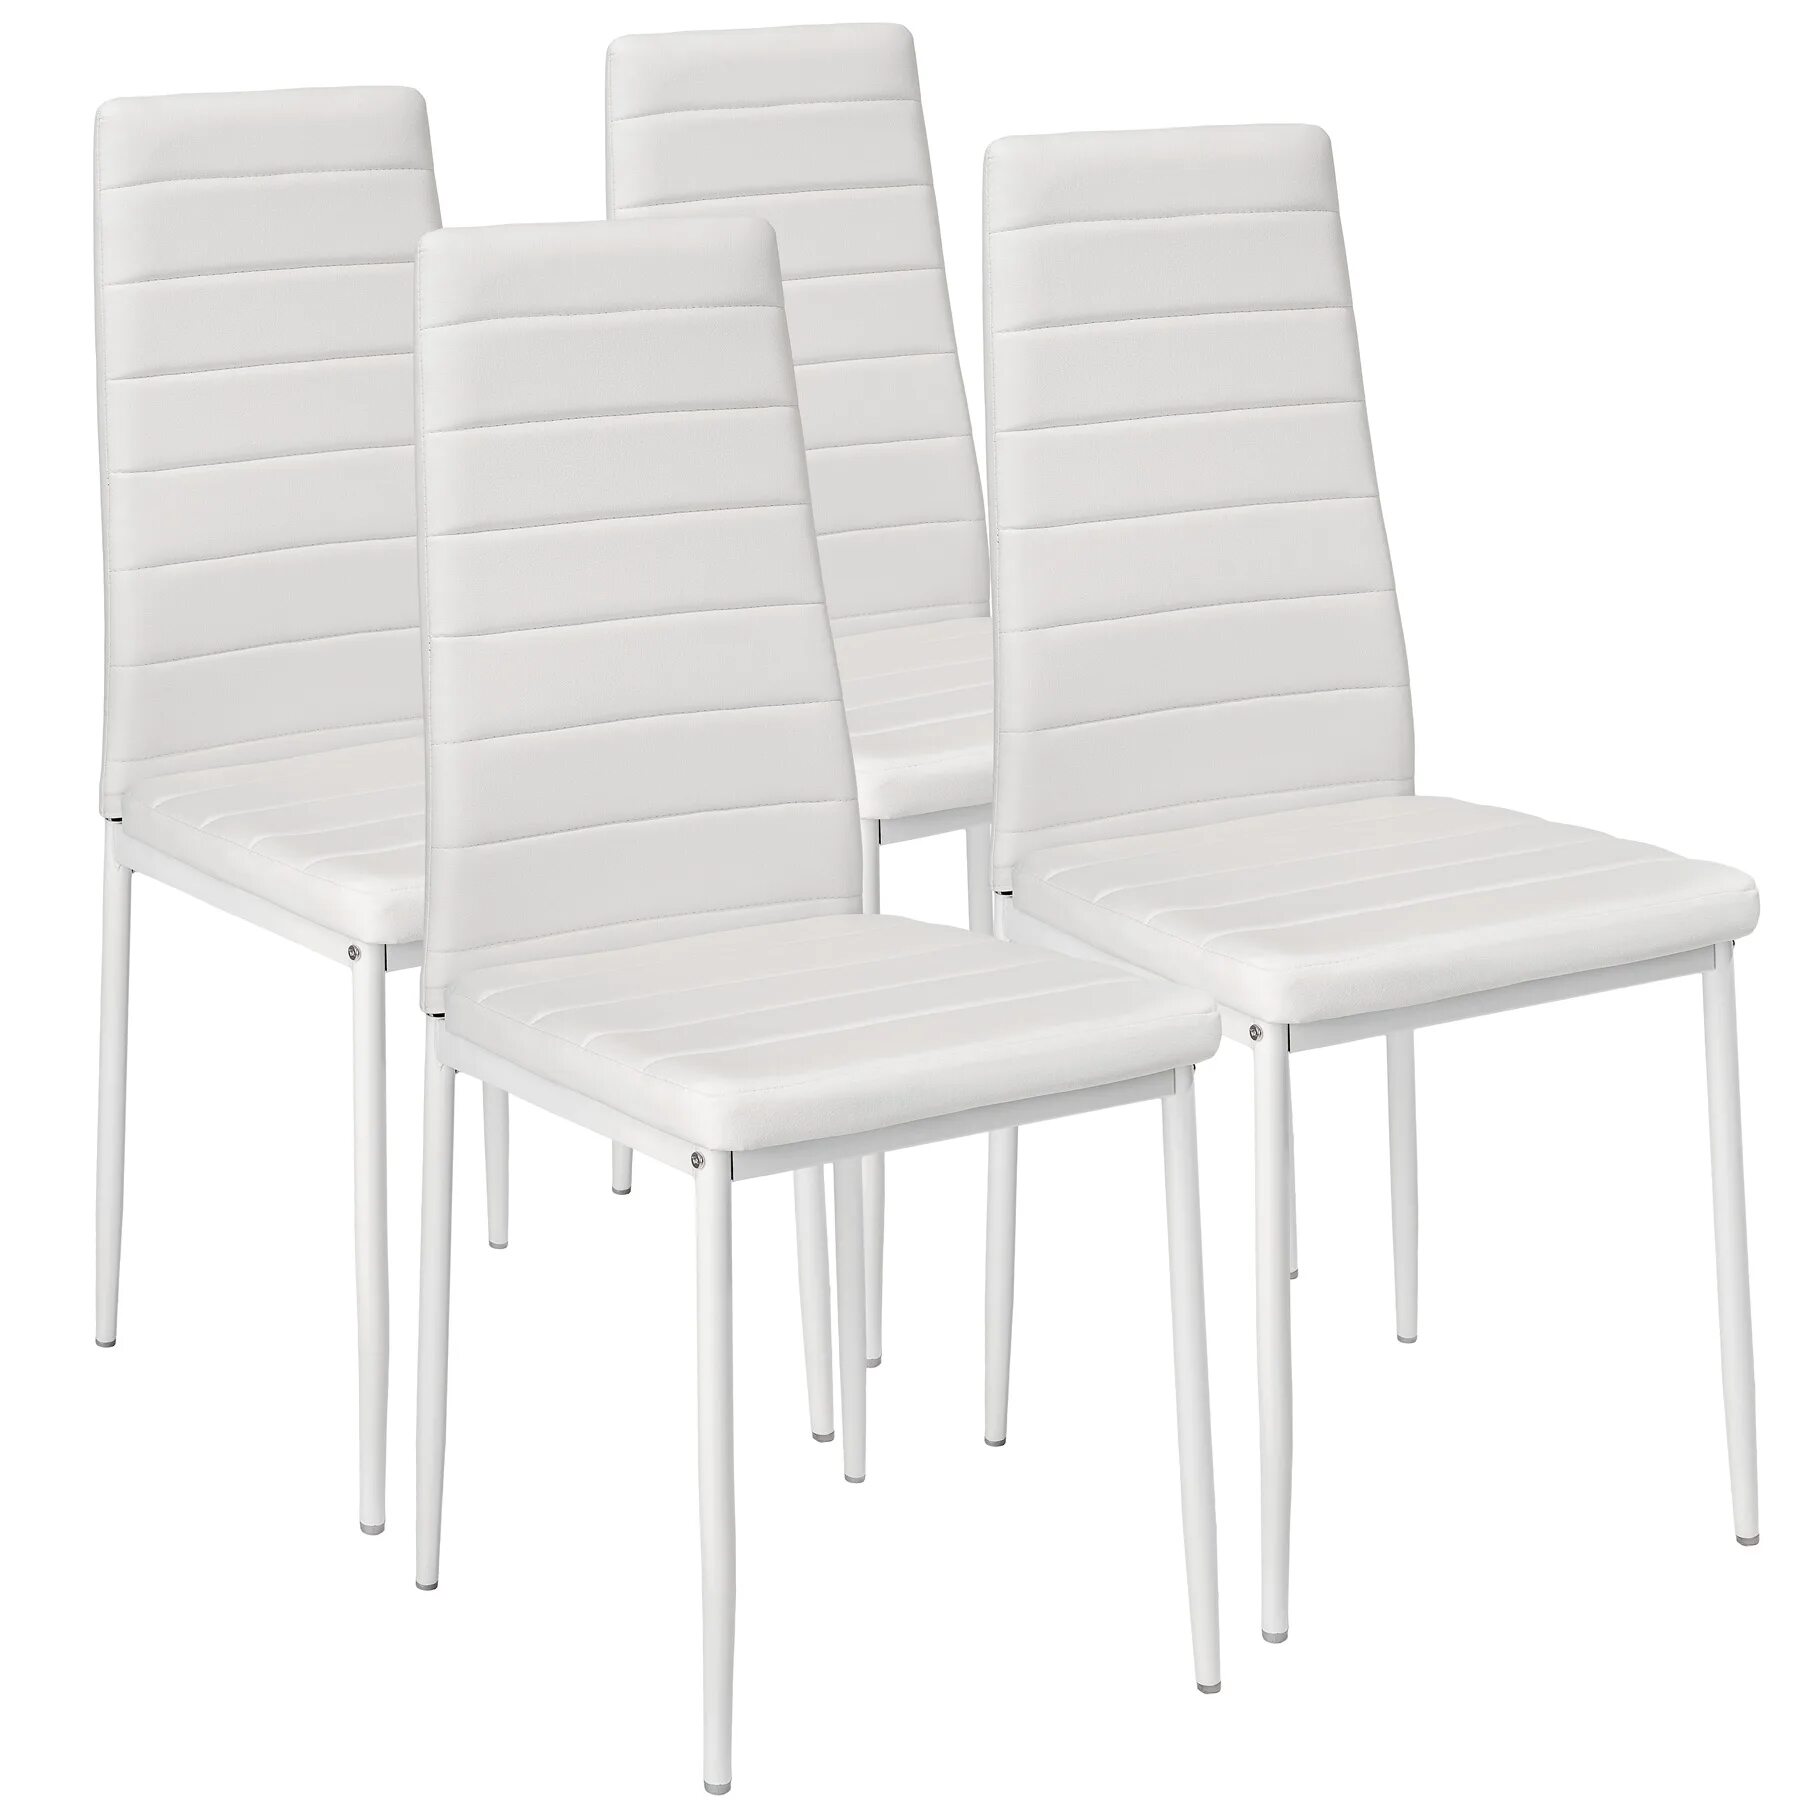 Купить стул каталог. Комплект стульев 4 шт. Stool Group y801-v, белый. Ikea стул кухонный. Стул из экокожи вс-017 2 шт белый. Икеа стулья кухонные мягкие.